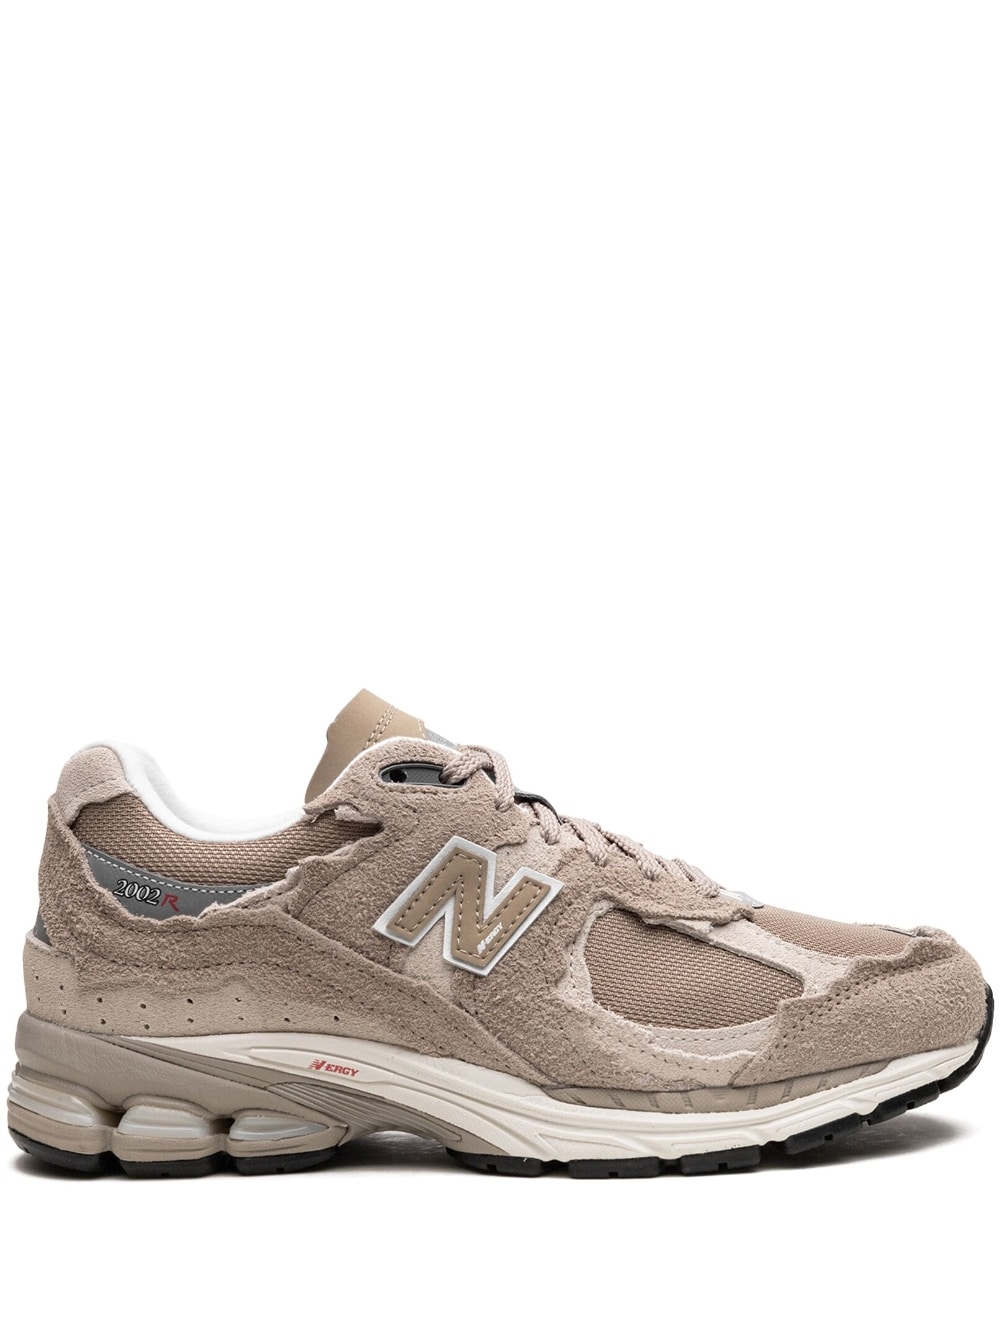 New Balance 2002RD "Driftwood/Sea Salt" sneakers - Neutrals